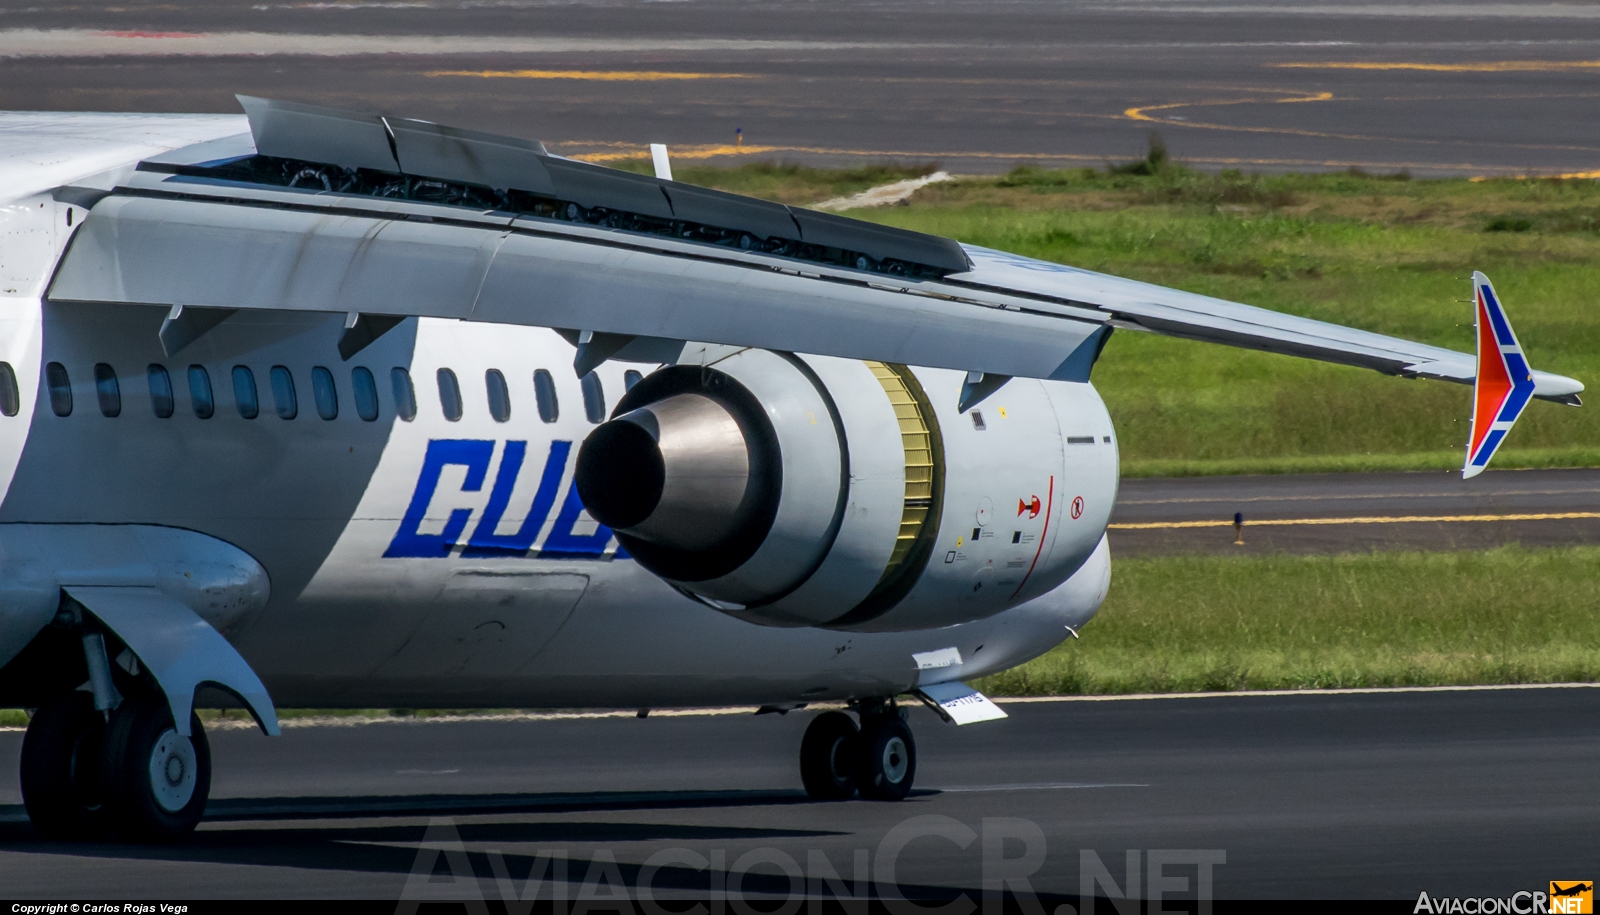 CU-TI715 - Antonov AN-158-100 - Cubana de Aviación